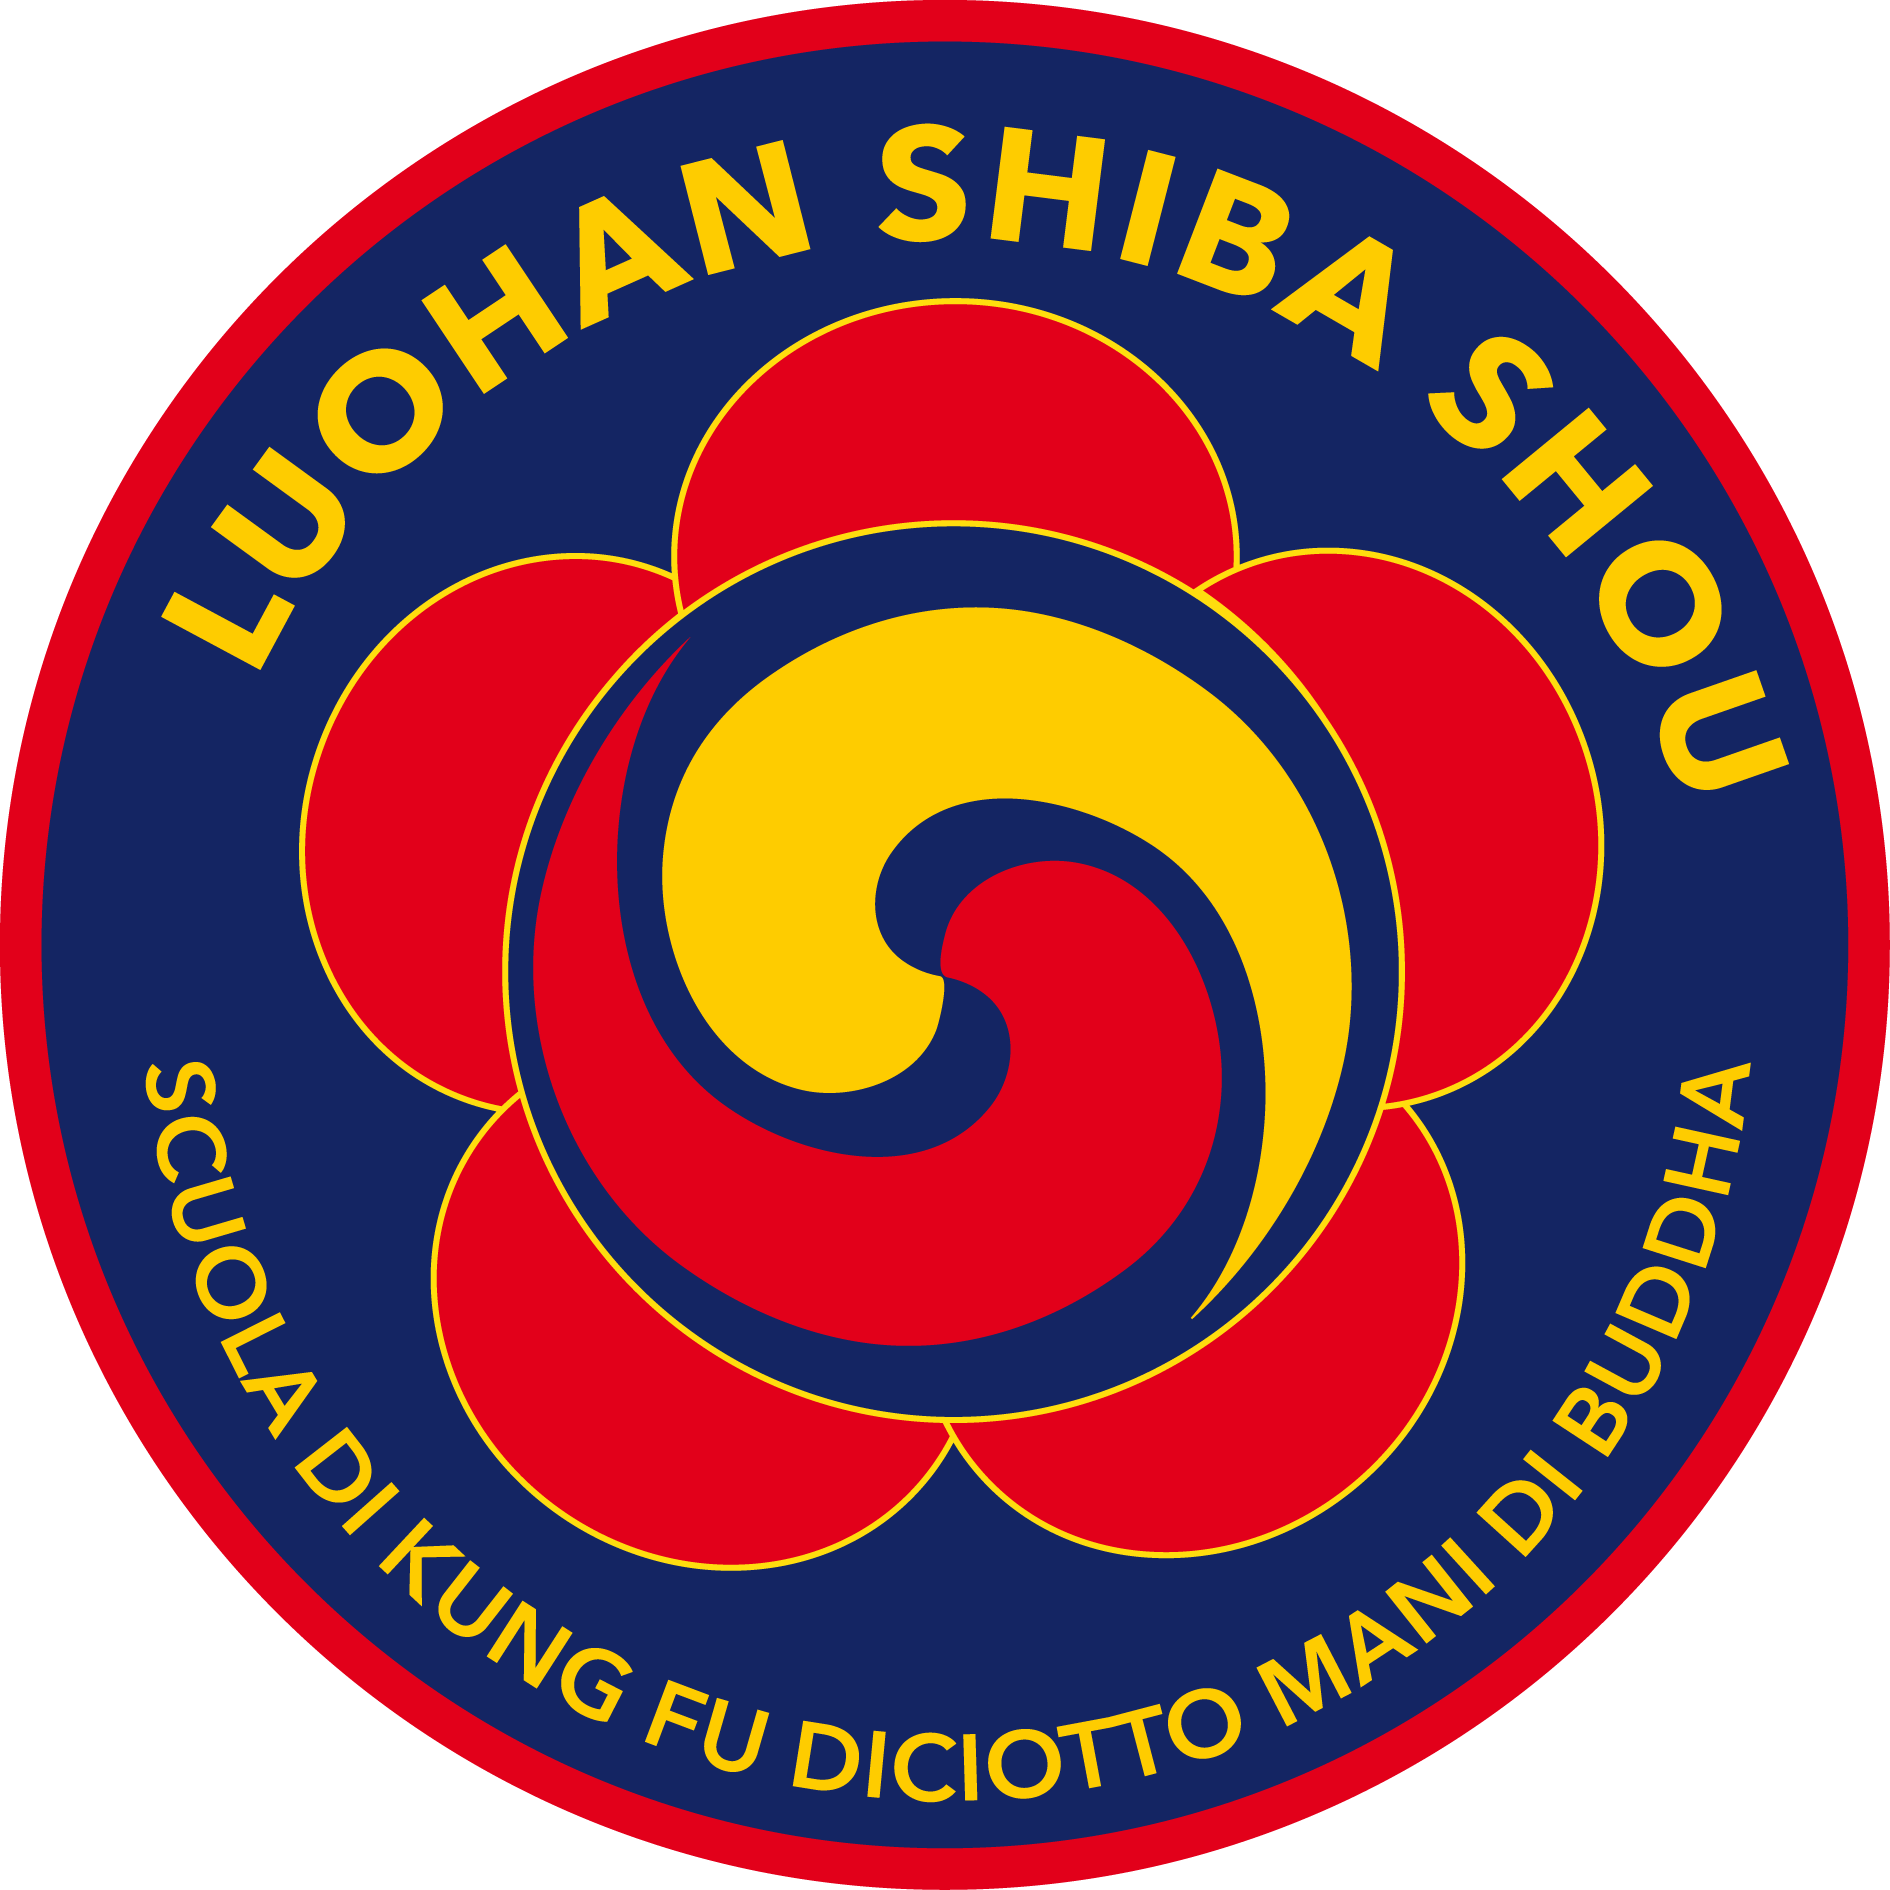 LUOHAN SHIBA SHOU